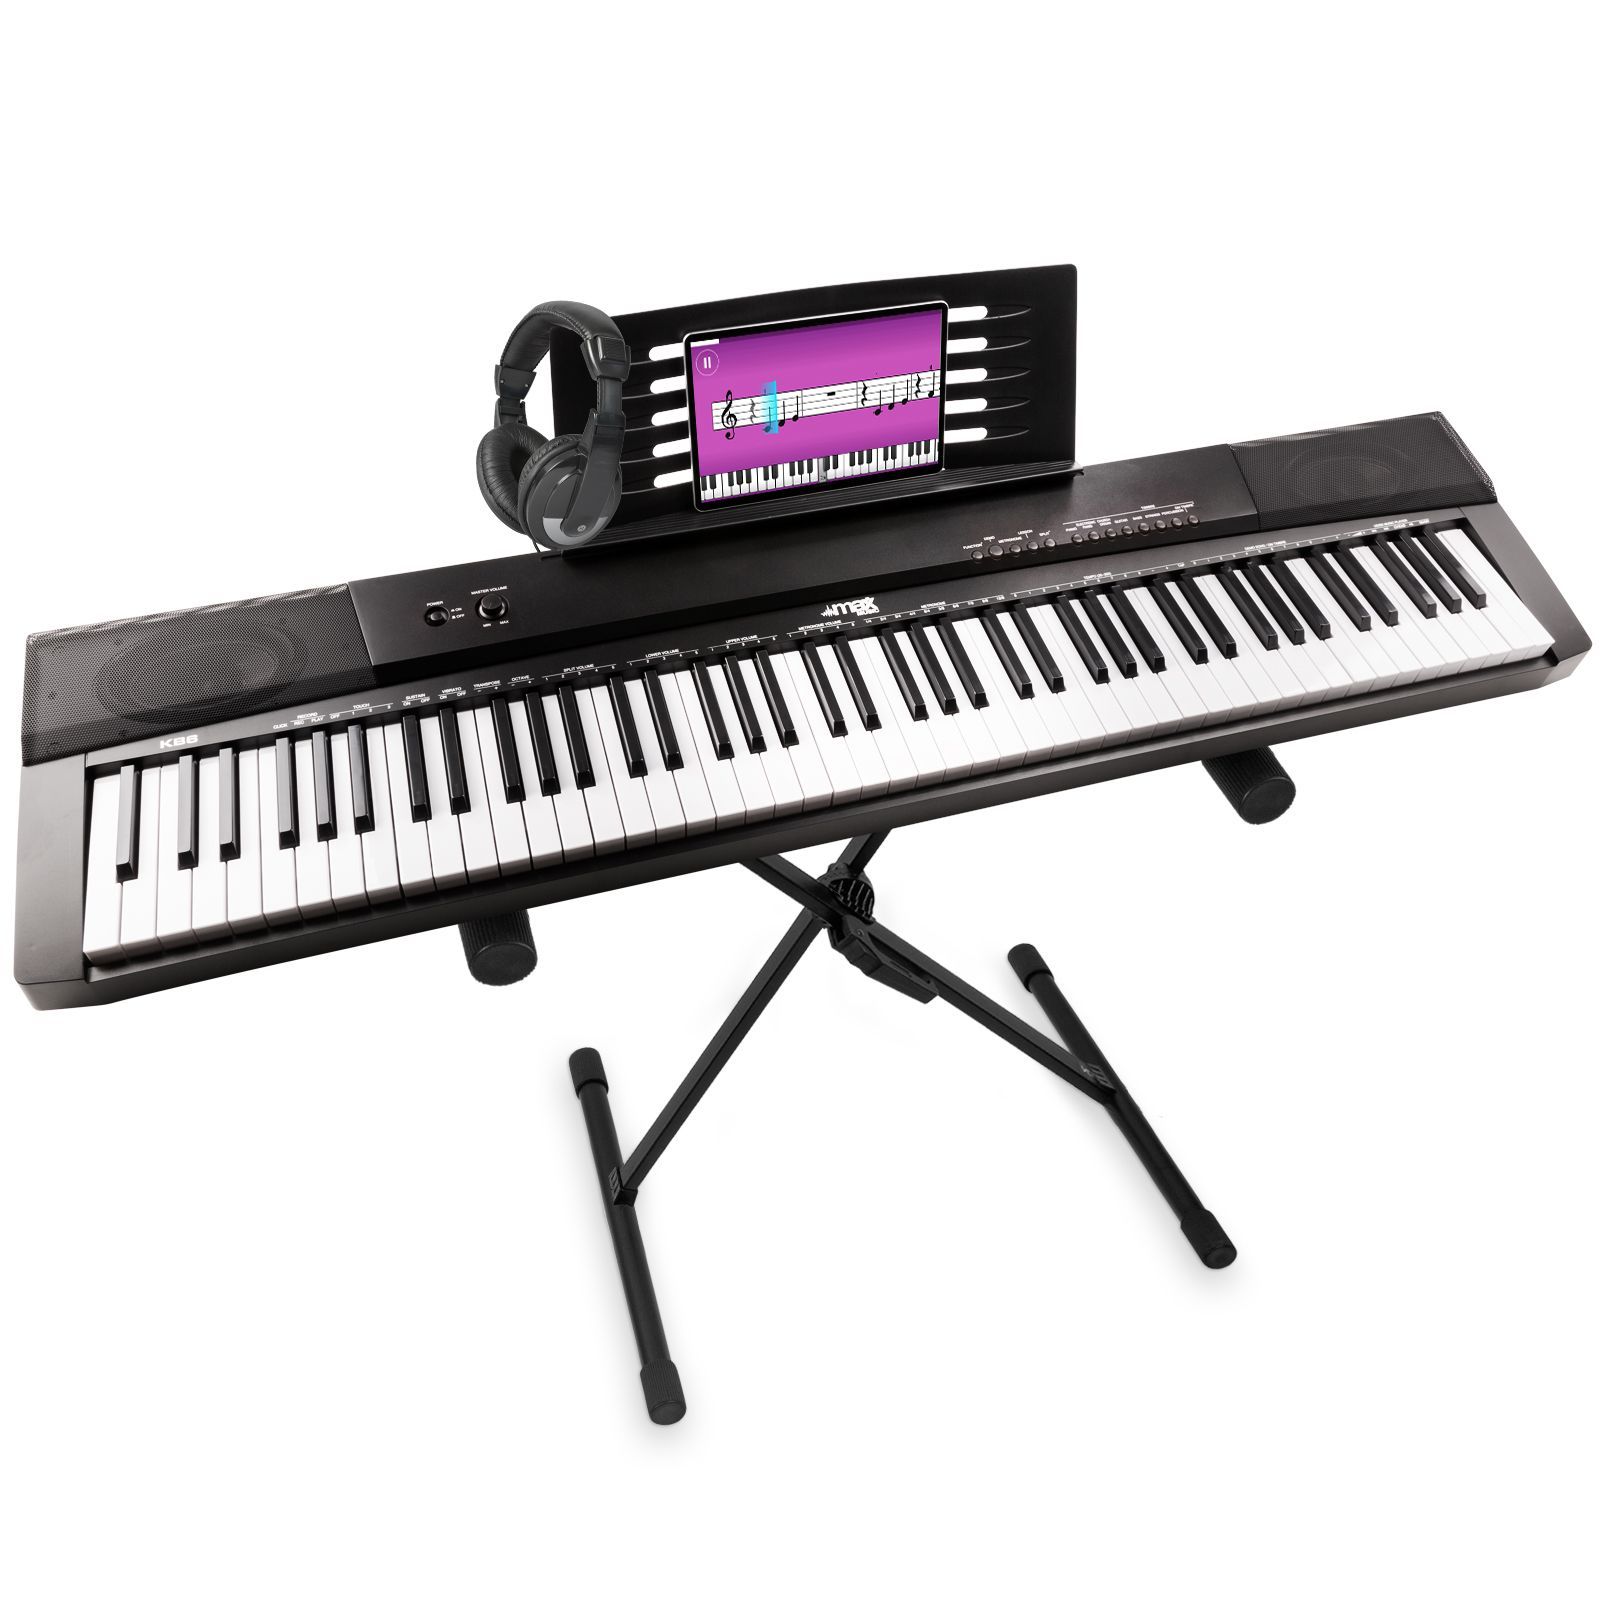 Bedankt nemen bijl MAX KB6 digitale piano met keyboardstandaard en koptelefoon kopen?